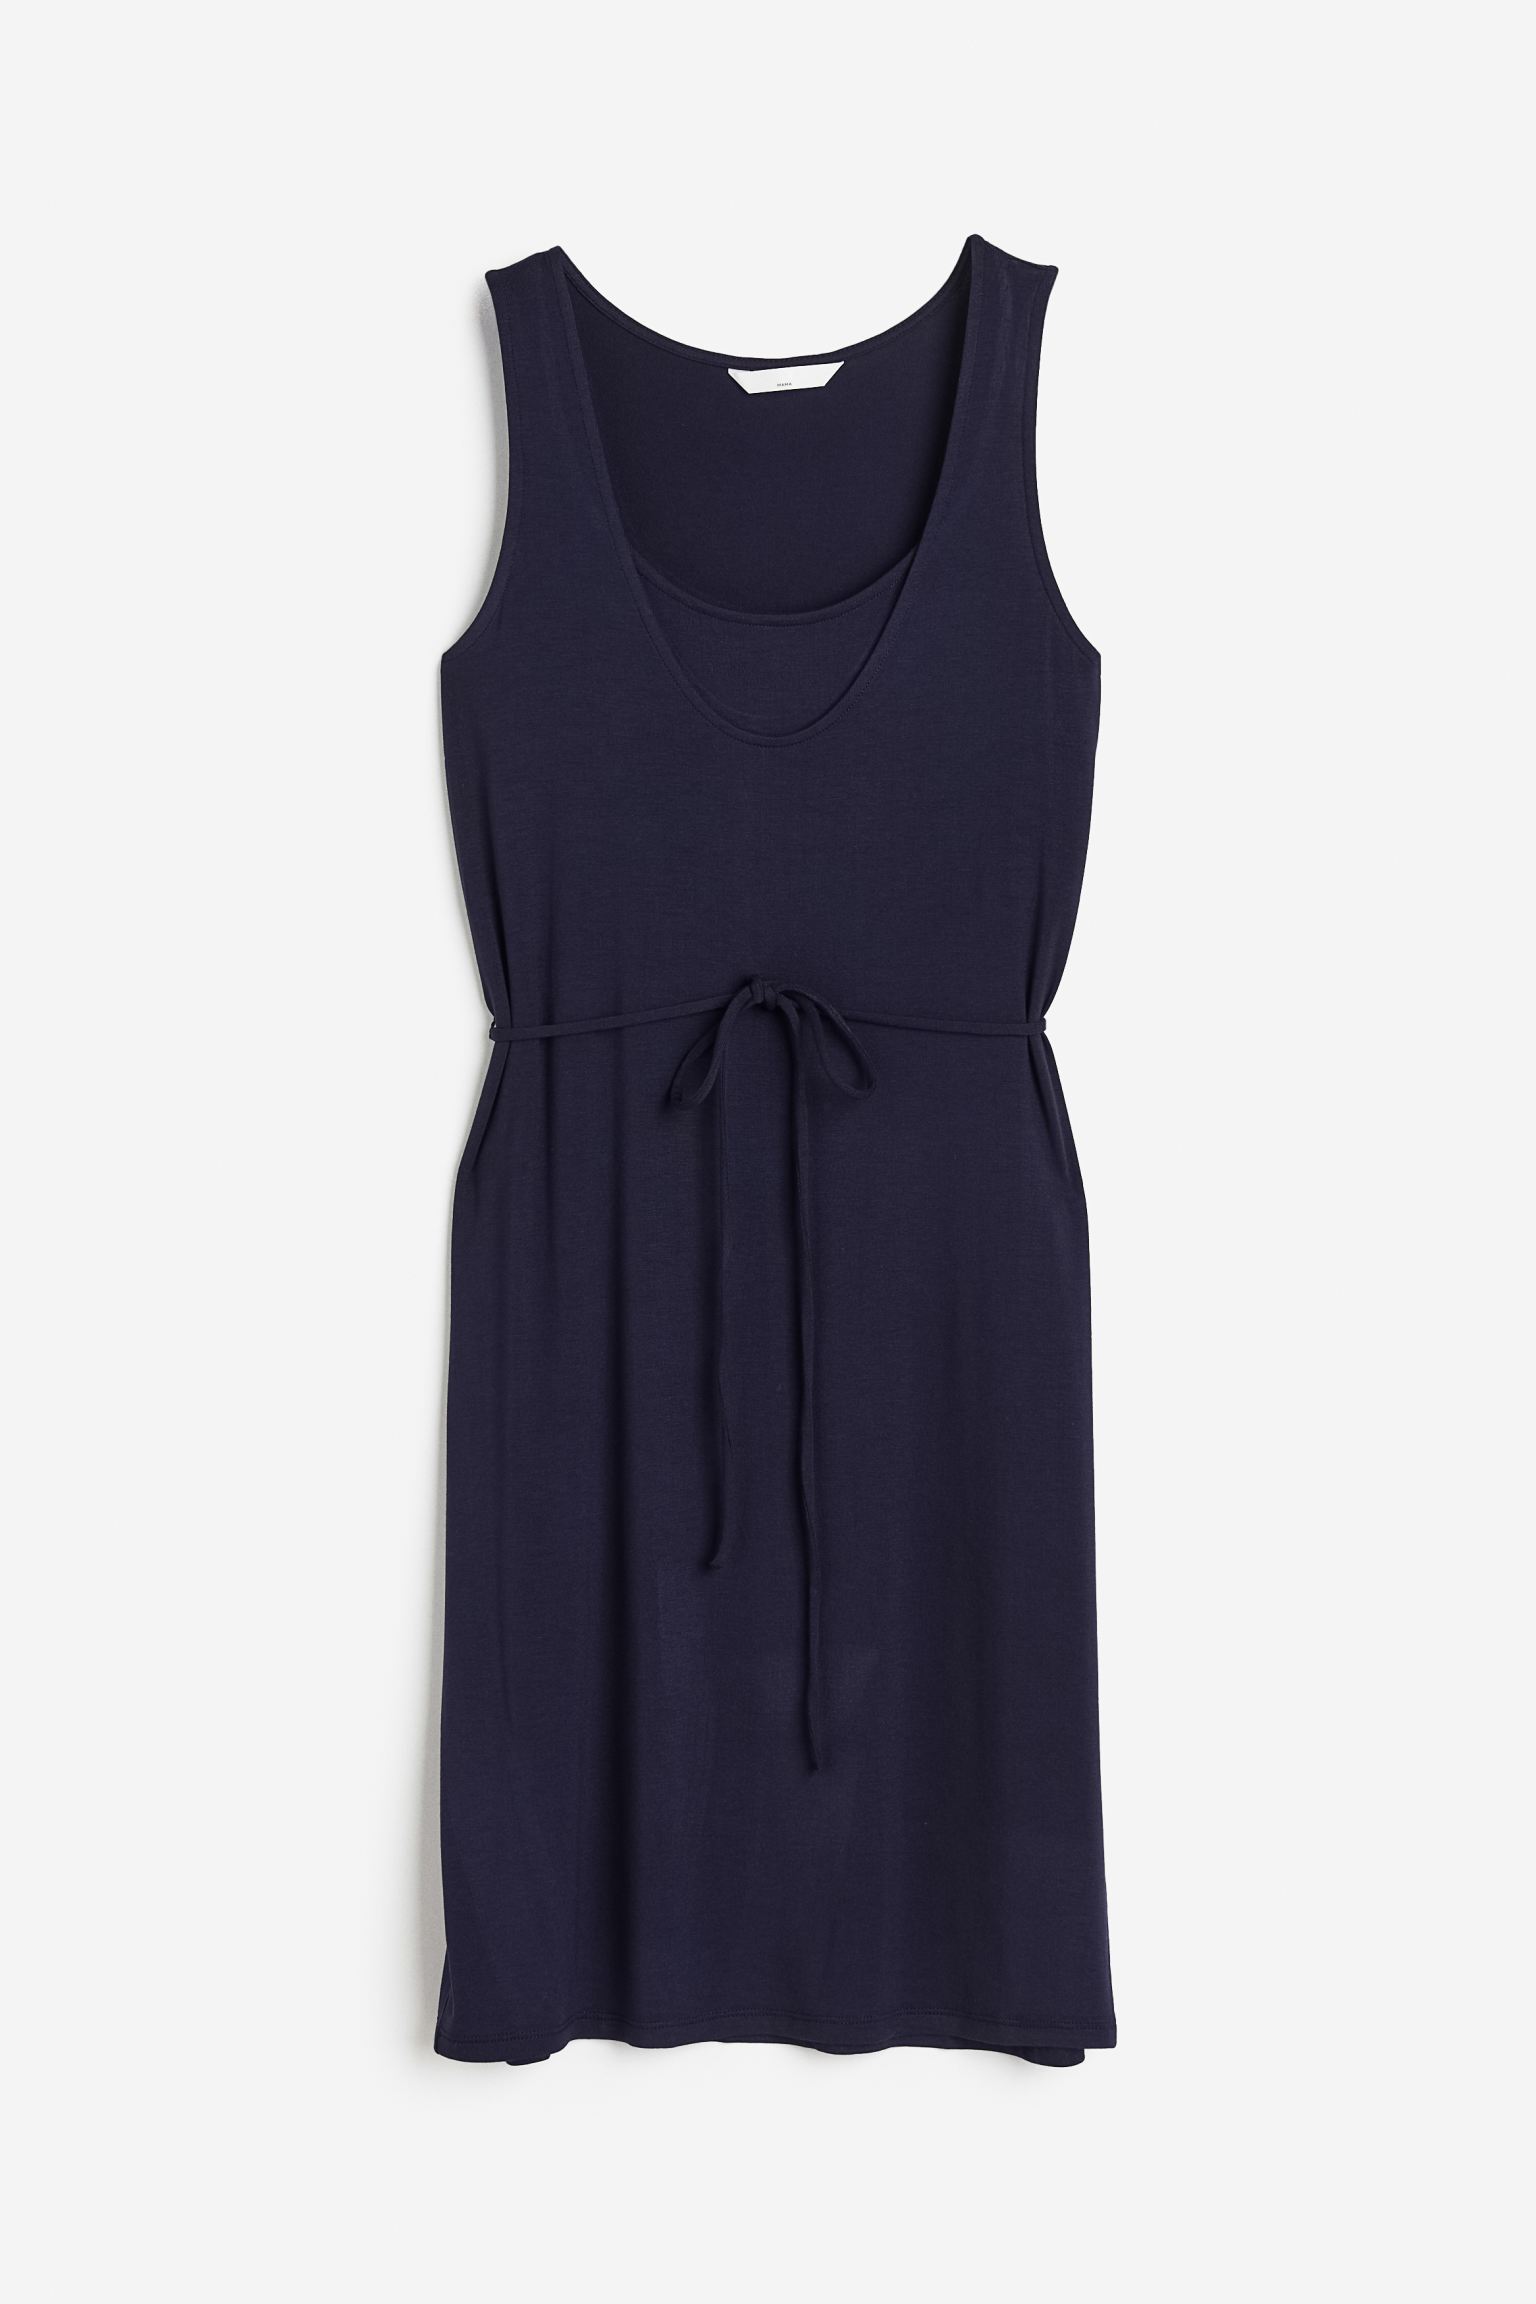 Платье женское H&M 1116459002 синее 2XL (доставка из-за рубежа)